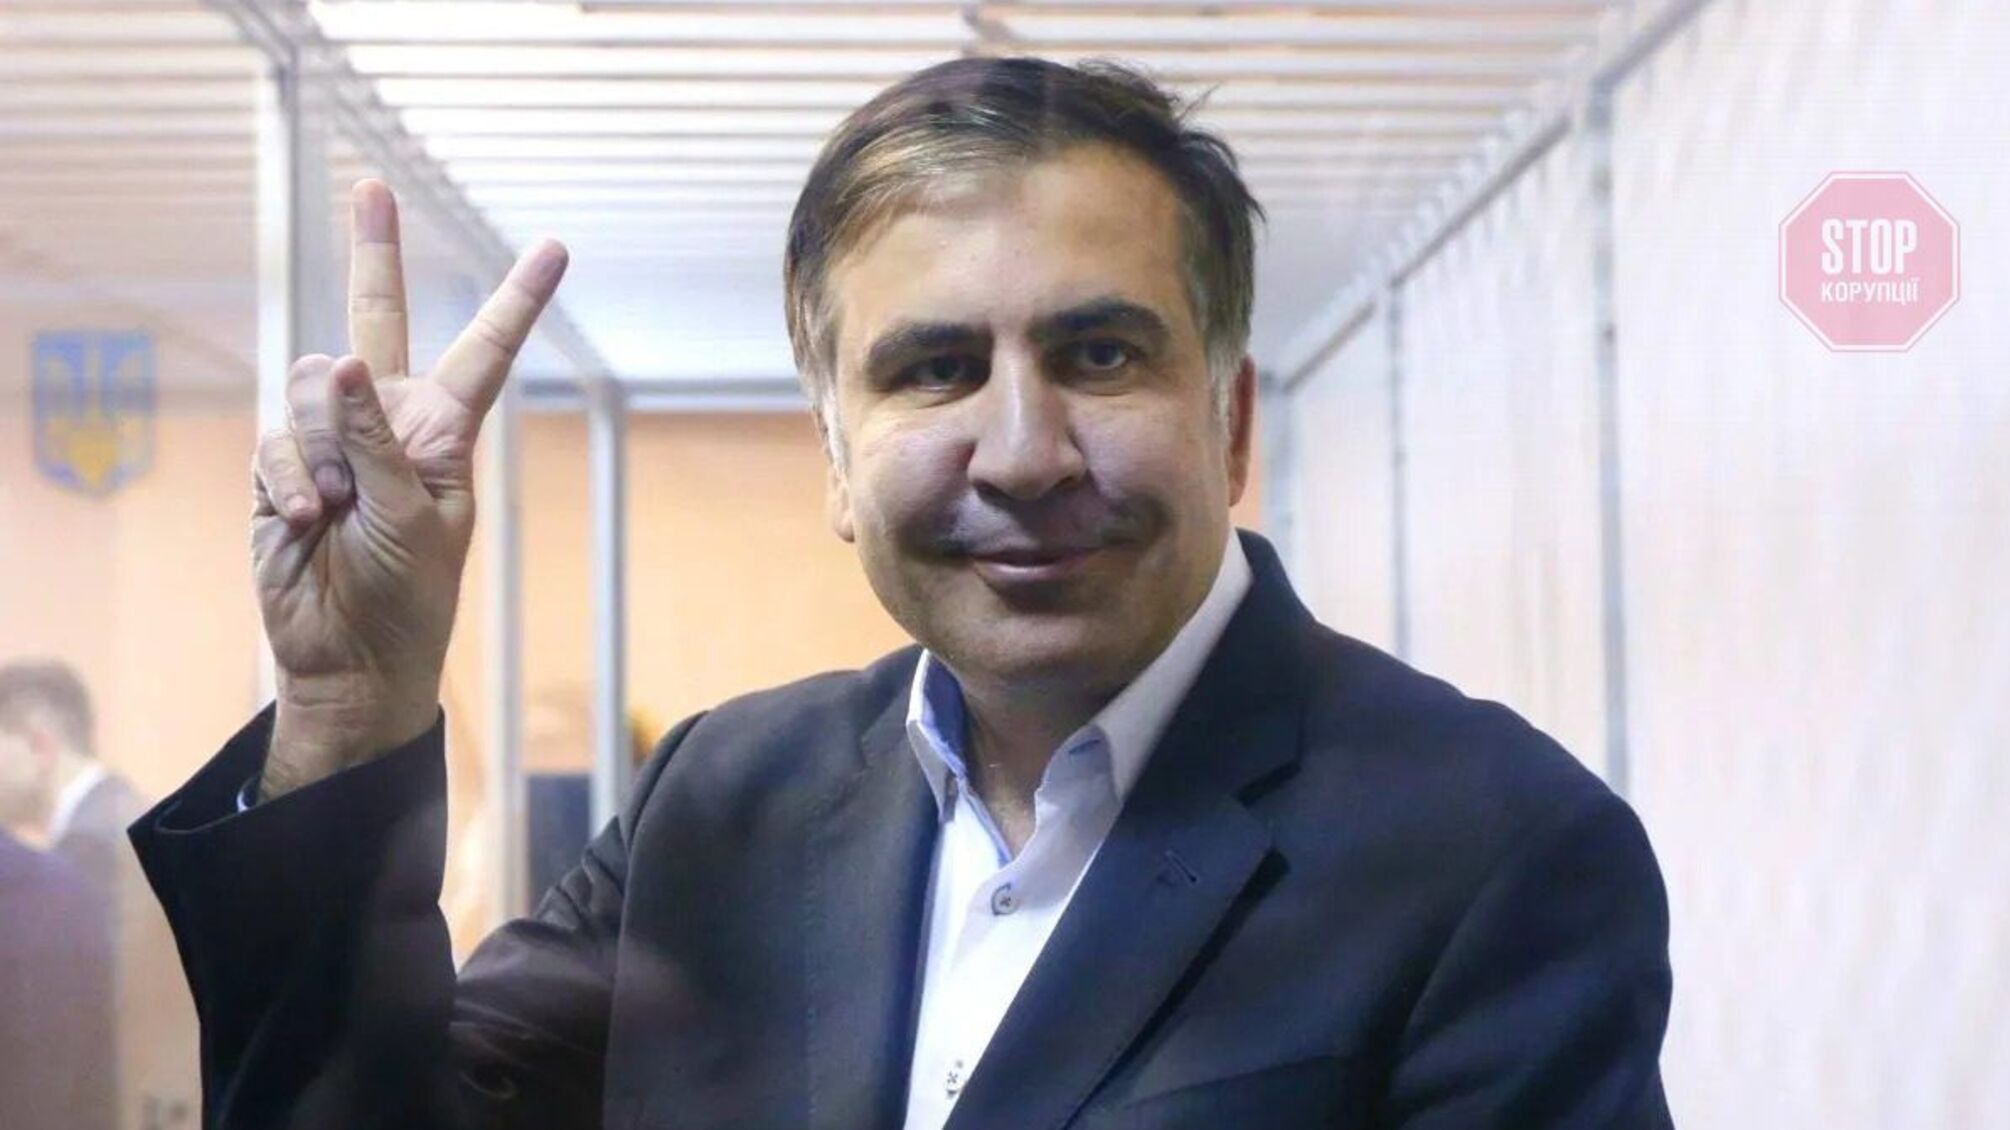 Родственники навестили Саакашвили в больнице и рассказали о его состоянии: «Есть слабость»